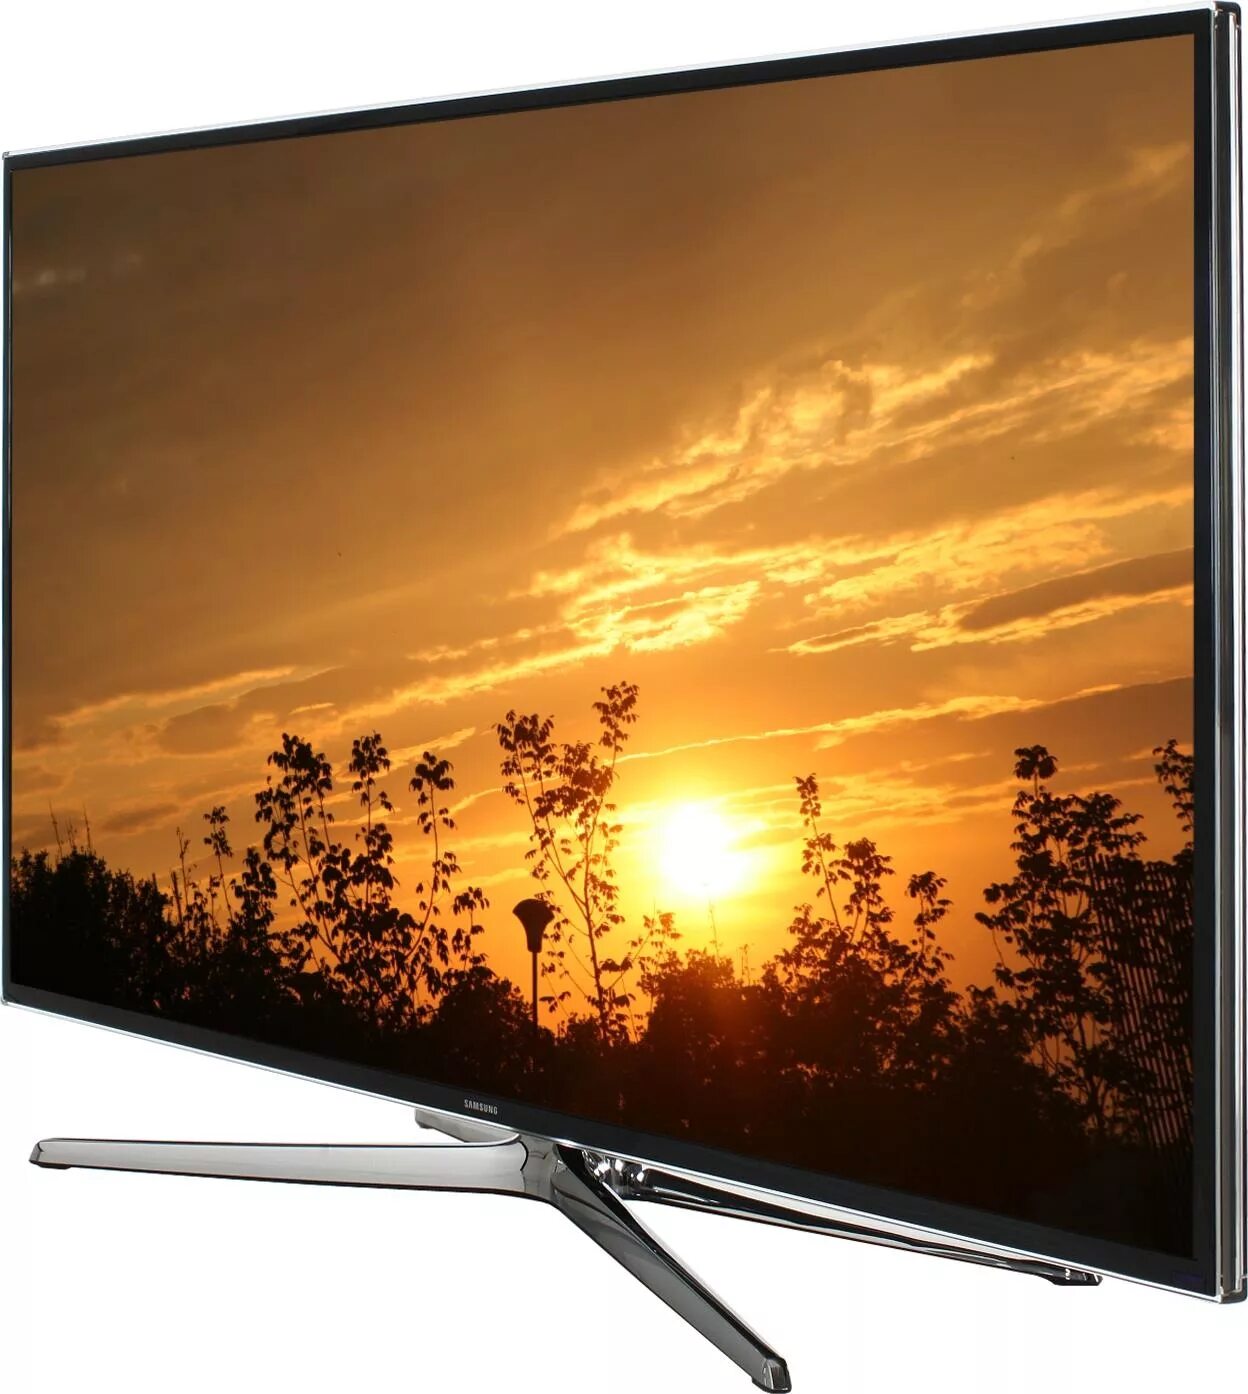 Куплю телевизор в интернет магазине дешево. Samsung led 48 Smart TV. Samsung led 40 Smart TV 2014. Samsung led 40 Smart TV 2013. Телевизор Samsung ue48h6230.